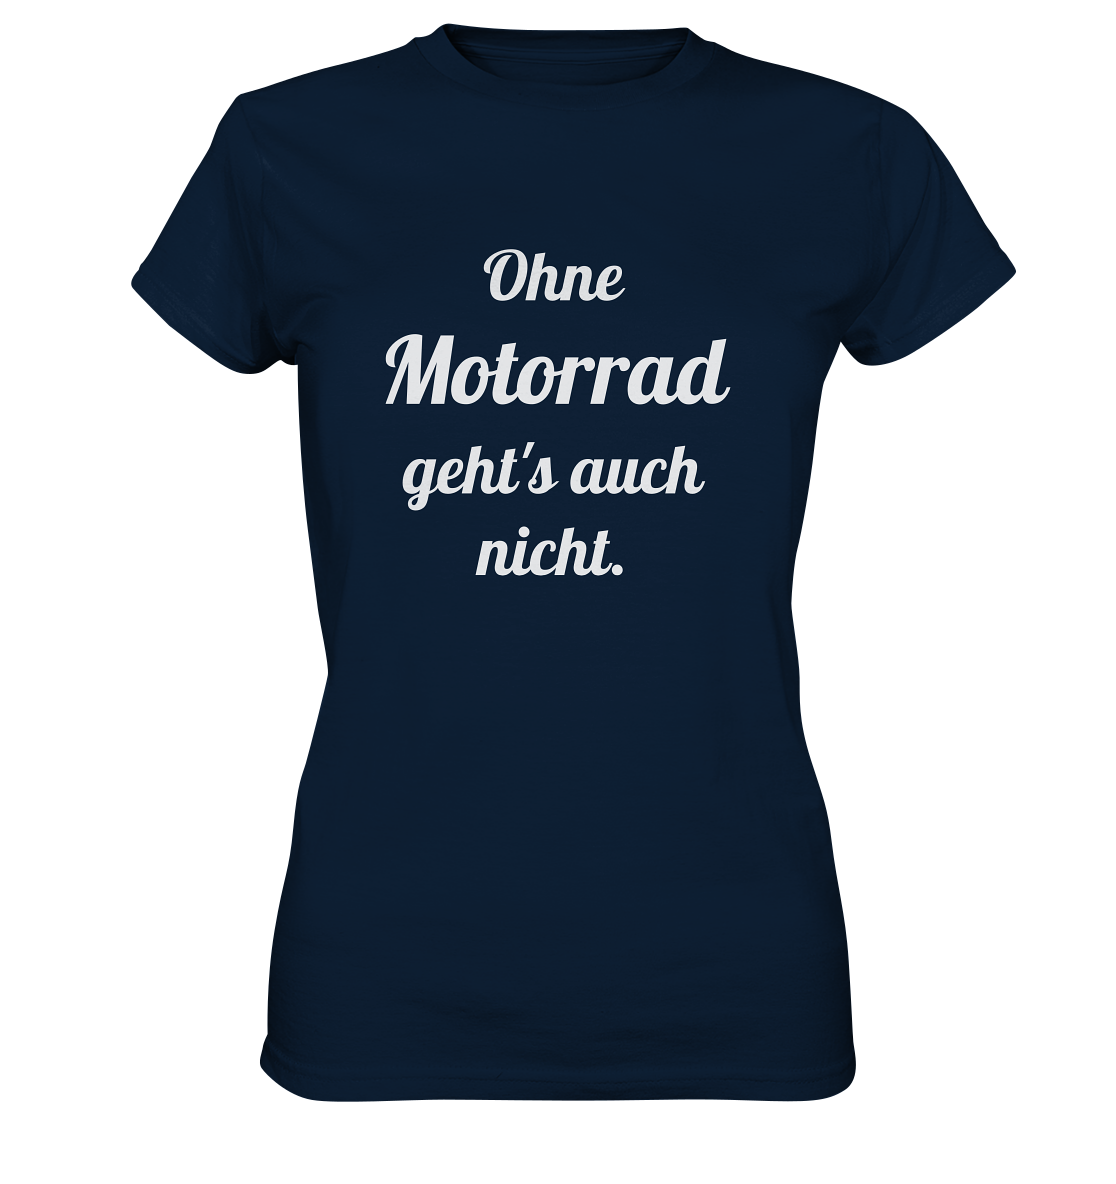 Damen-T-Shirt, Rundhals mit Aufdruck "Ohne Motorrad geht's auch nicht", dunkel blau